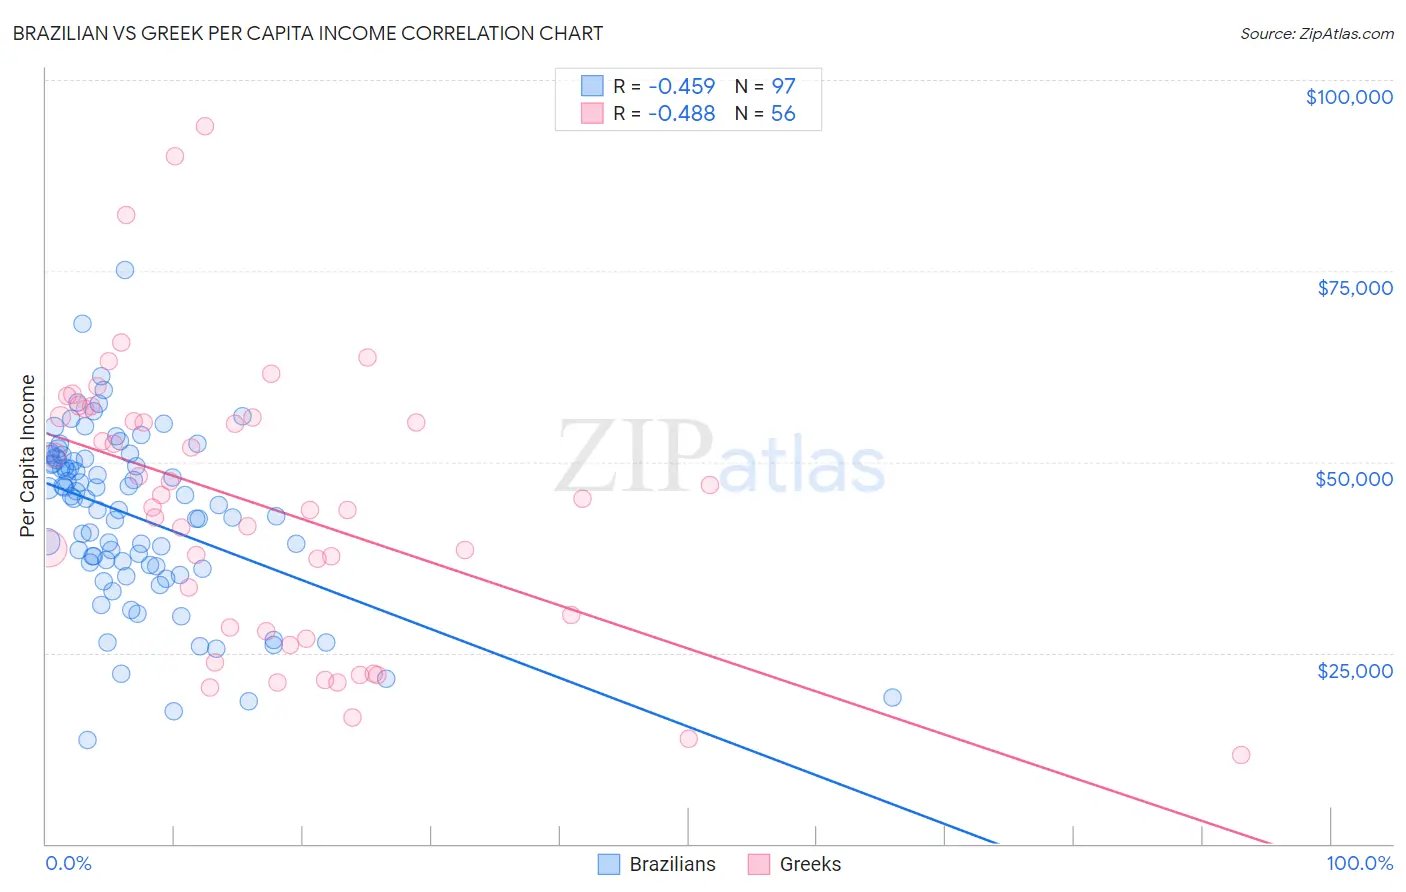 Brazilian vs Greek Per Capita Income